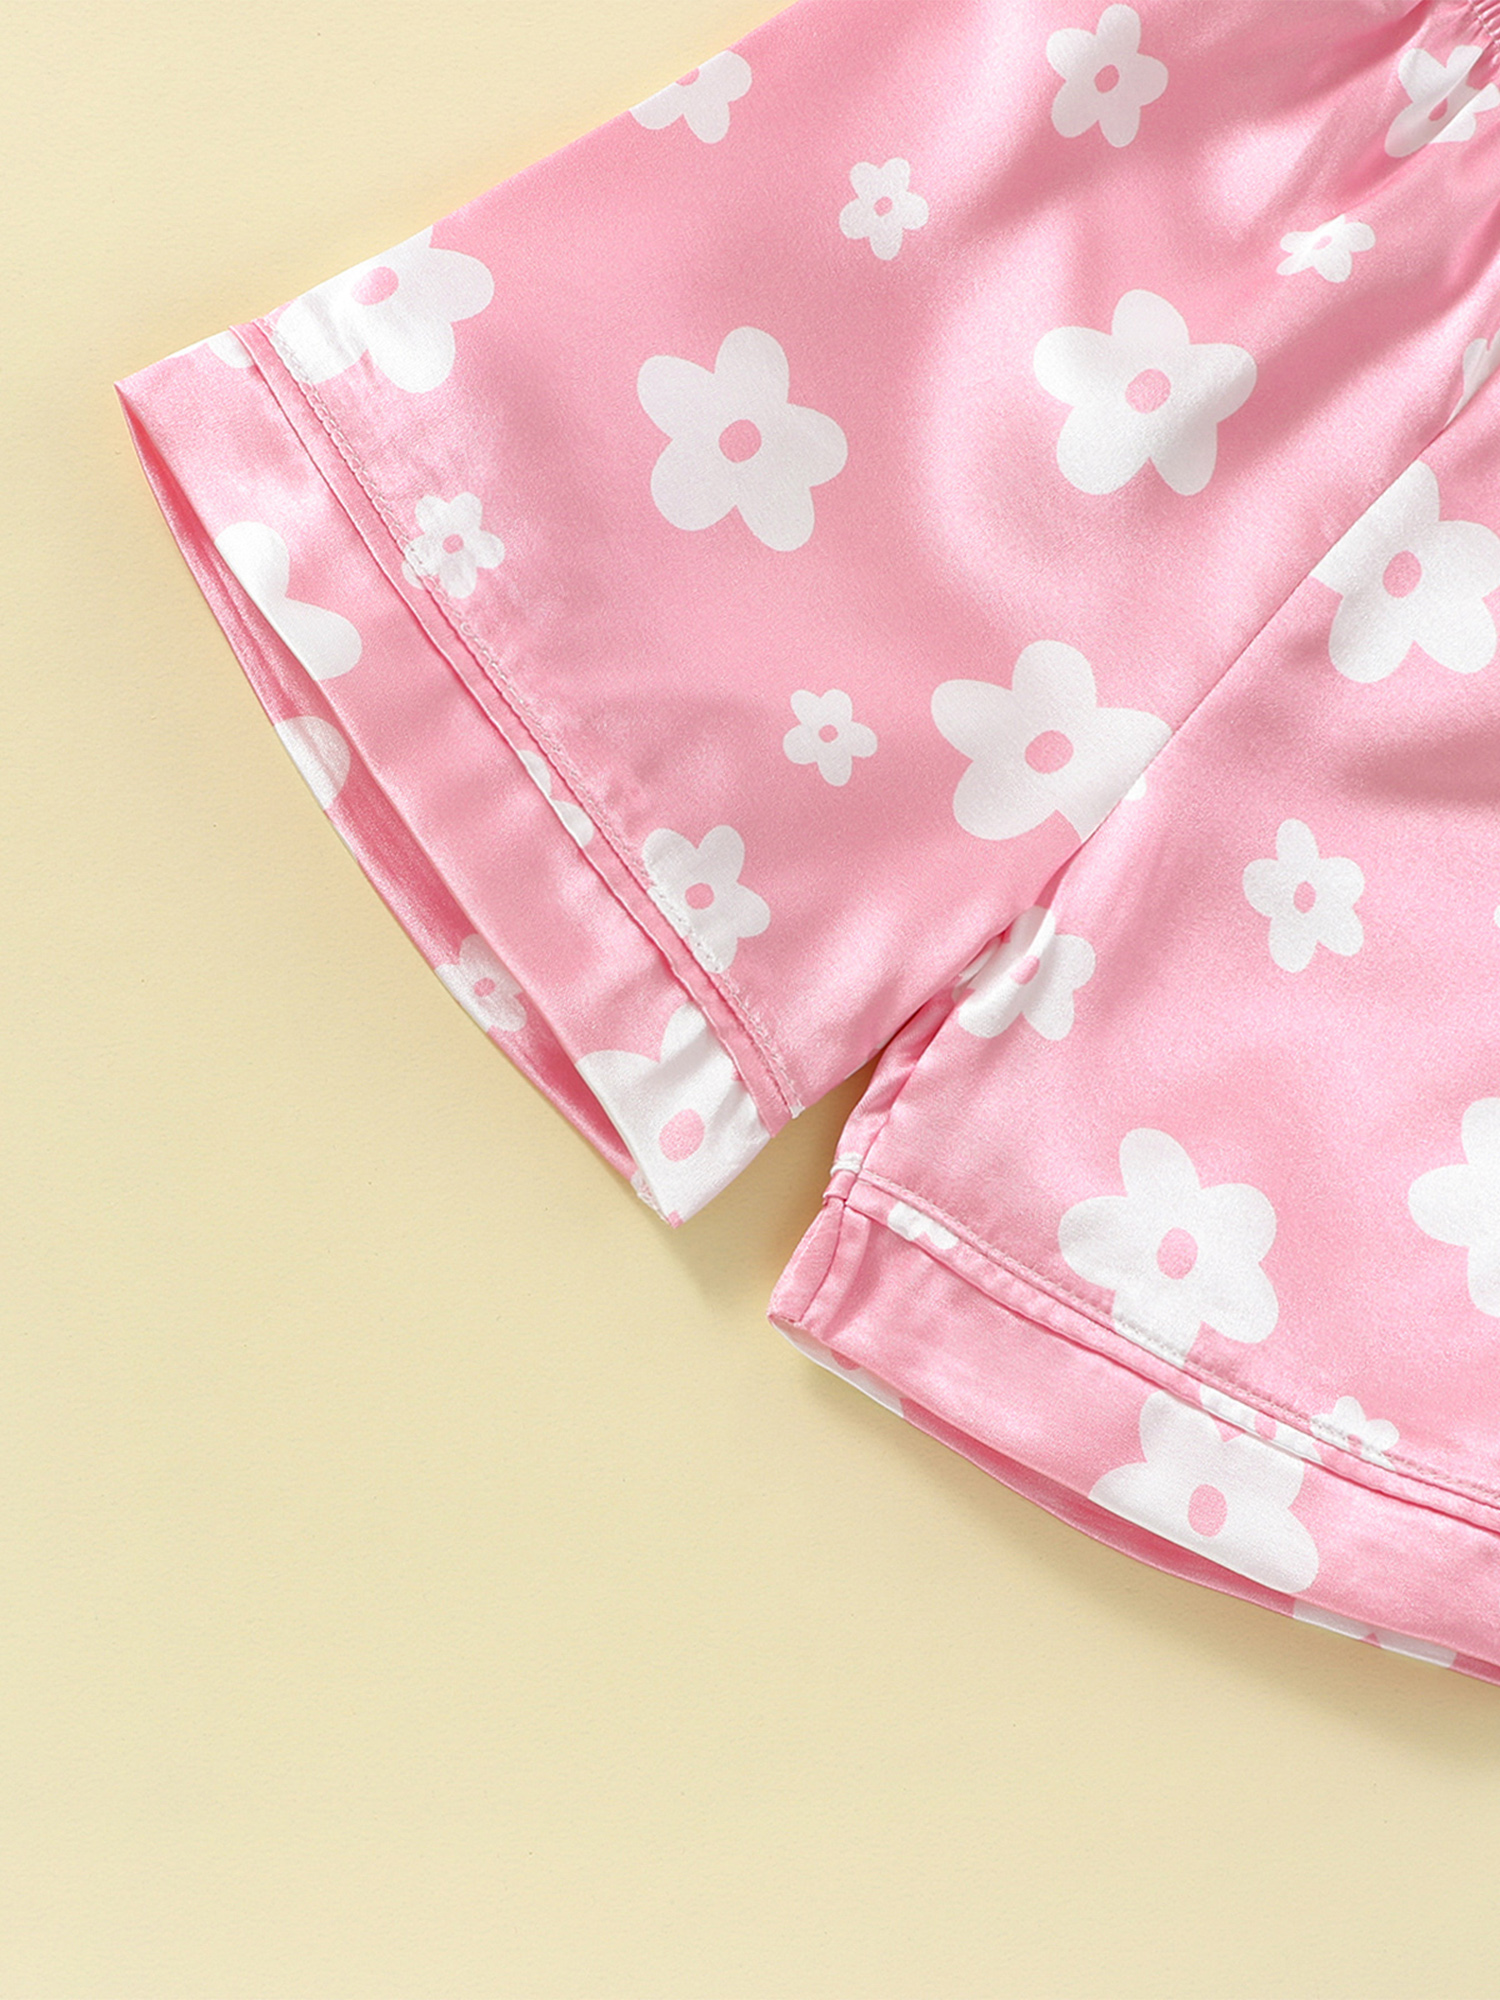 Kids Toddler Girls Silk Satin Pajamas Set Short Sleeve Button Down ...